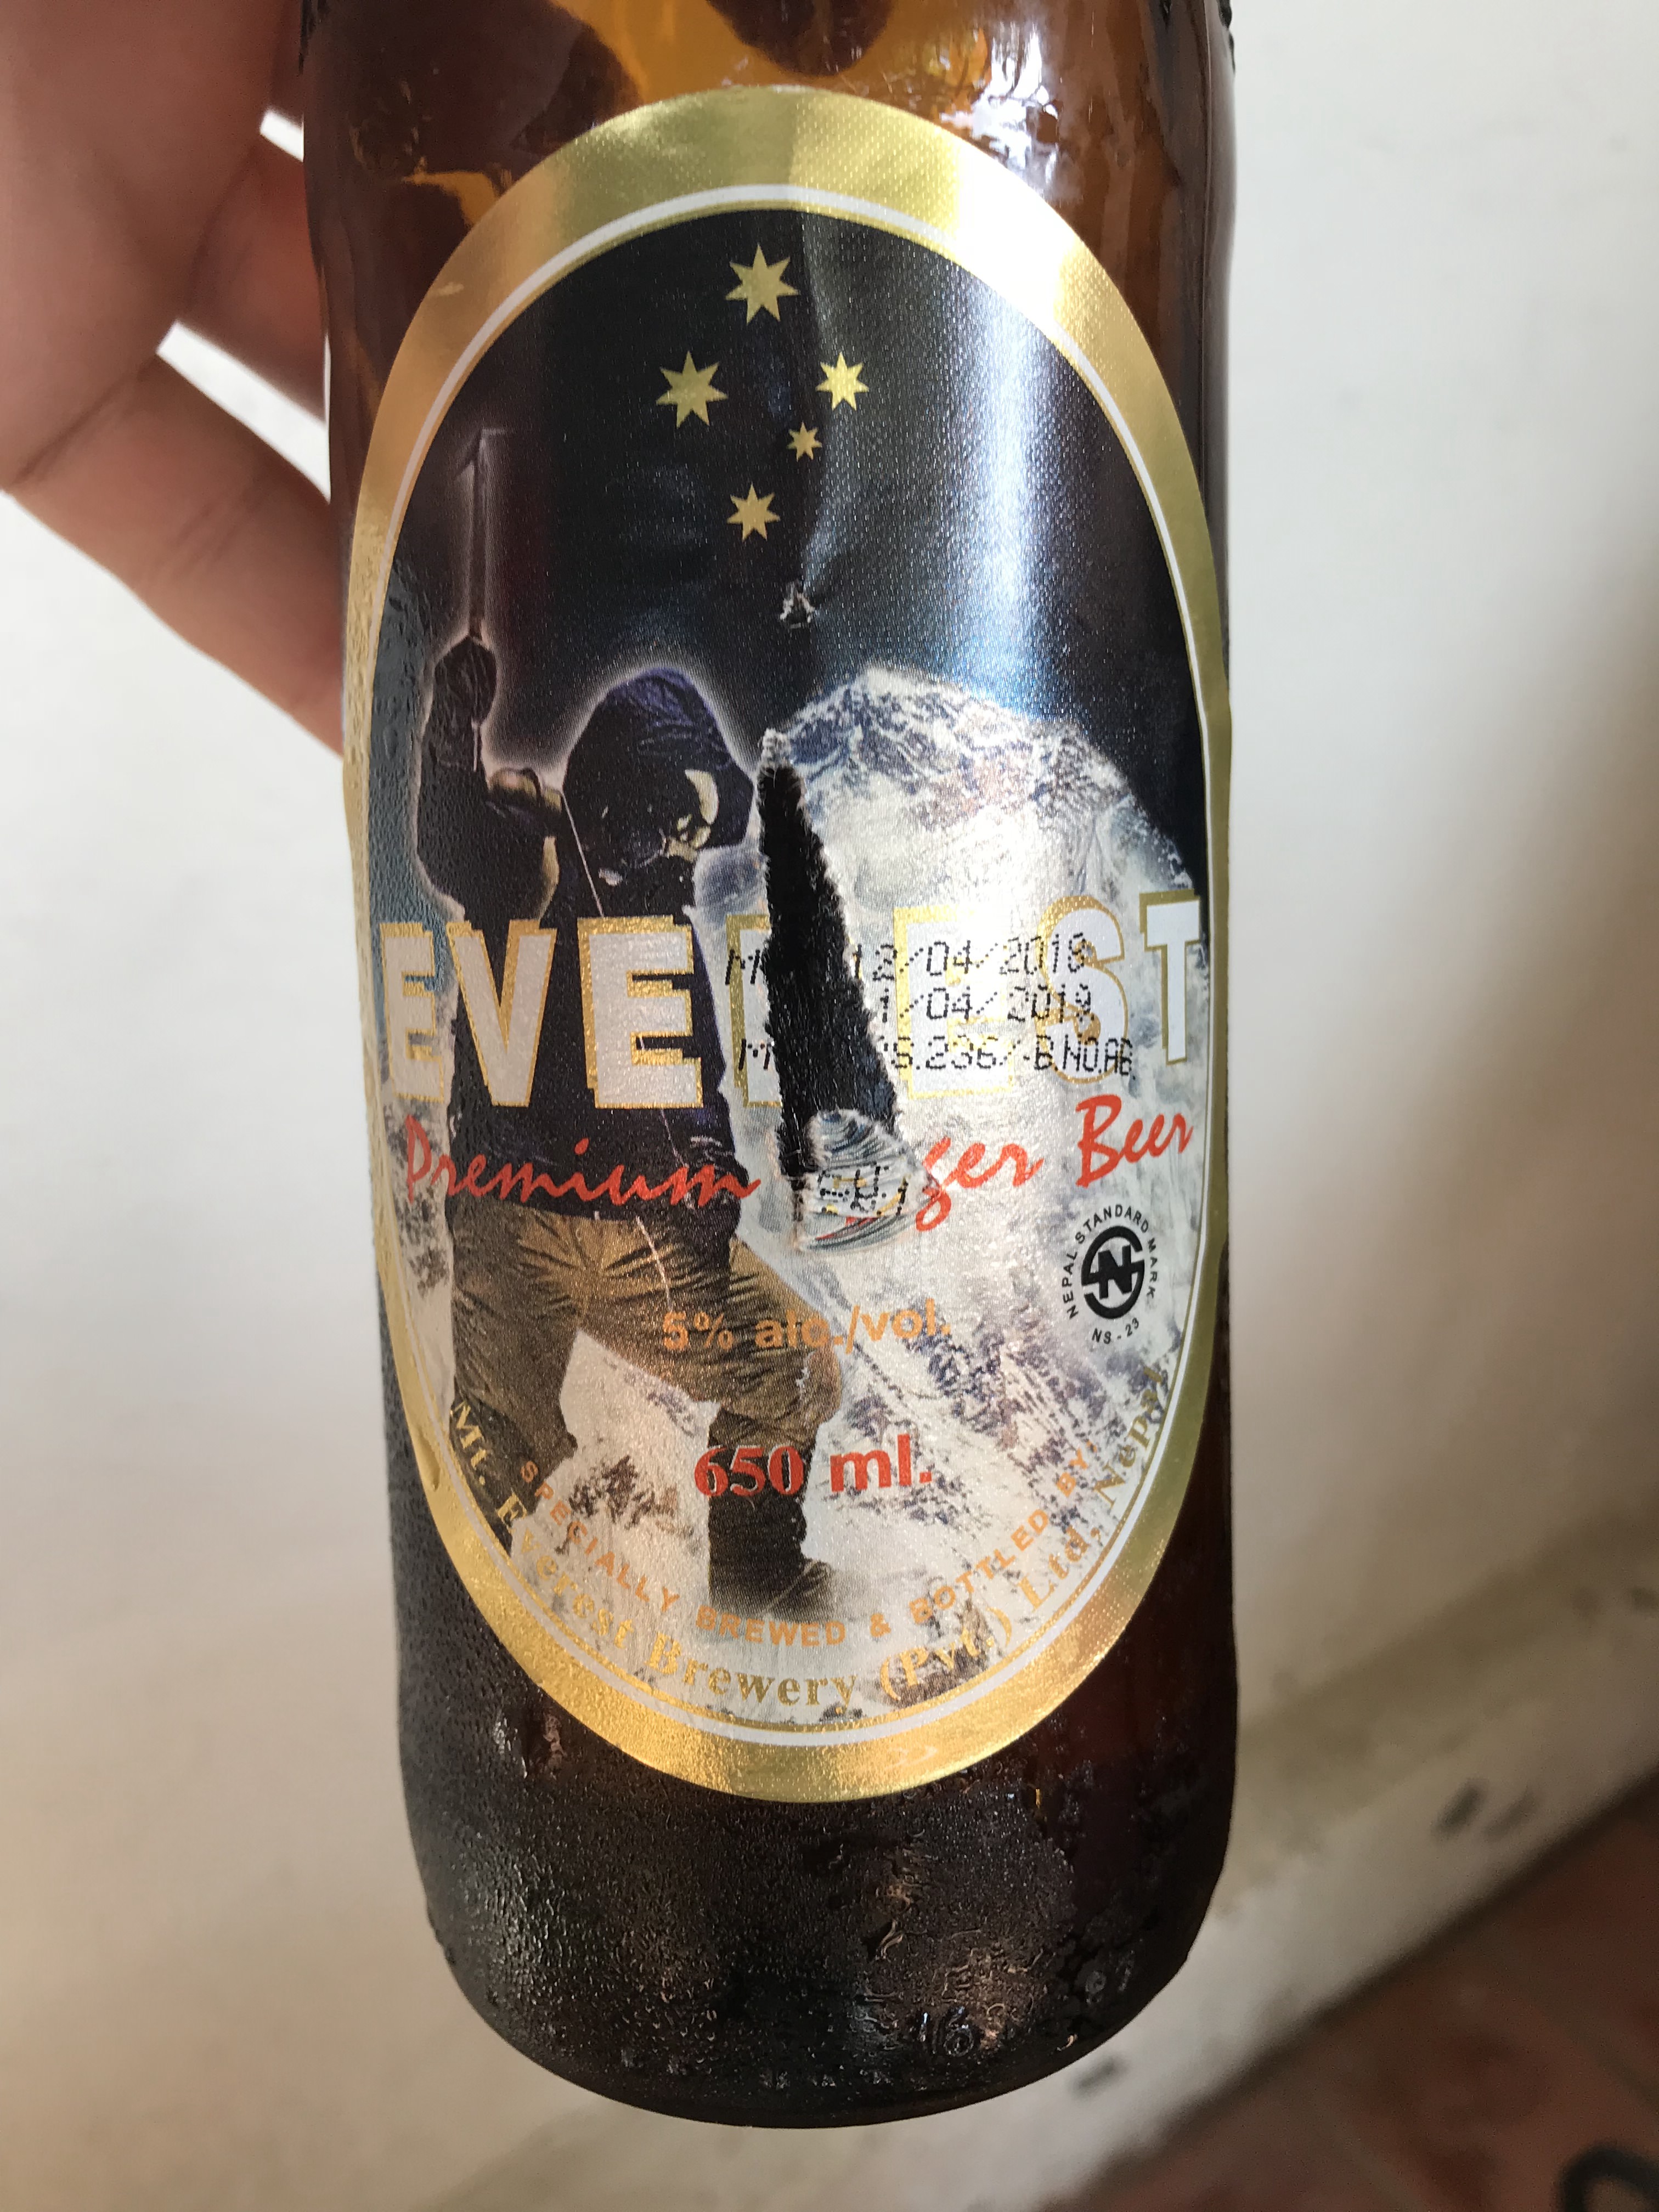 Everest Beer